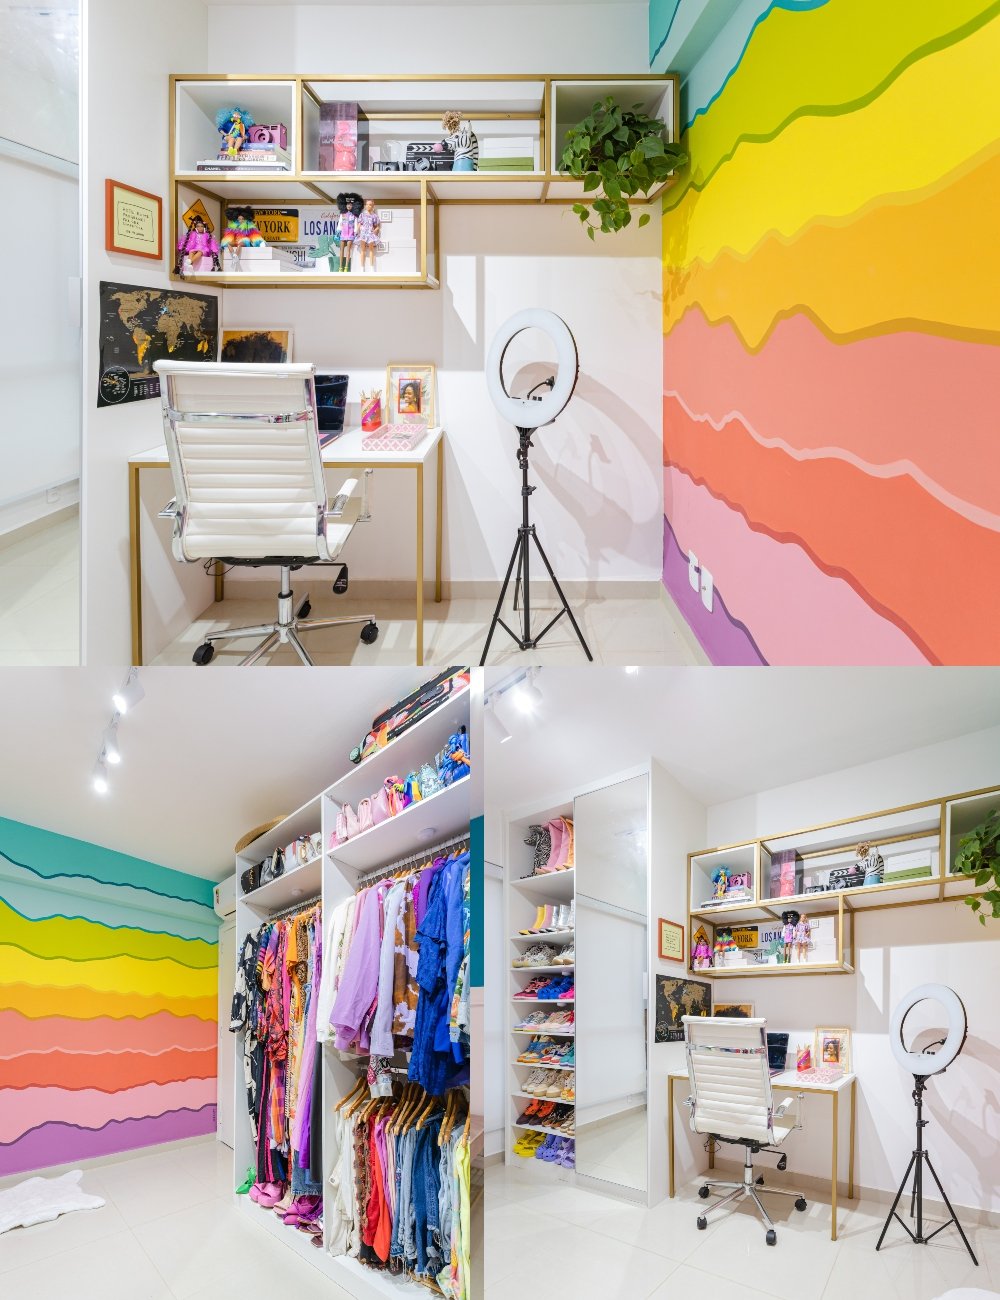 Closet/Escritório - casa - casa colorida - decoração - Steal The Home - https://stealthelook.com.br